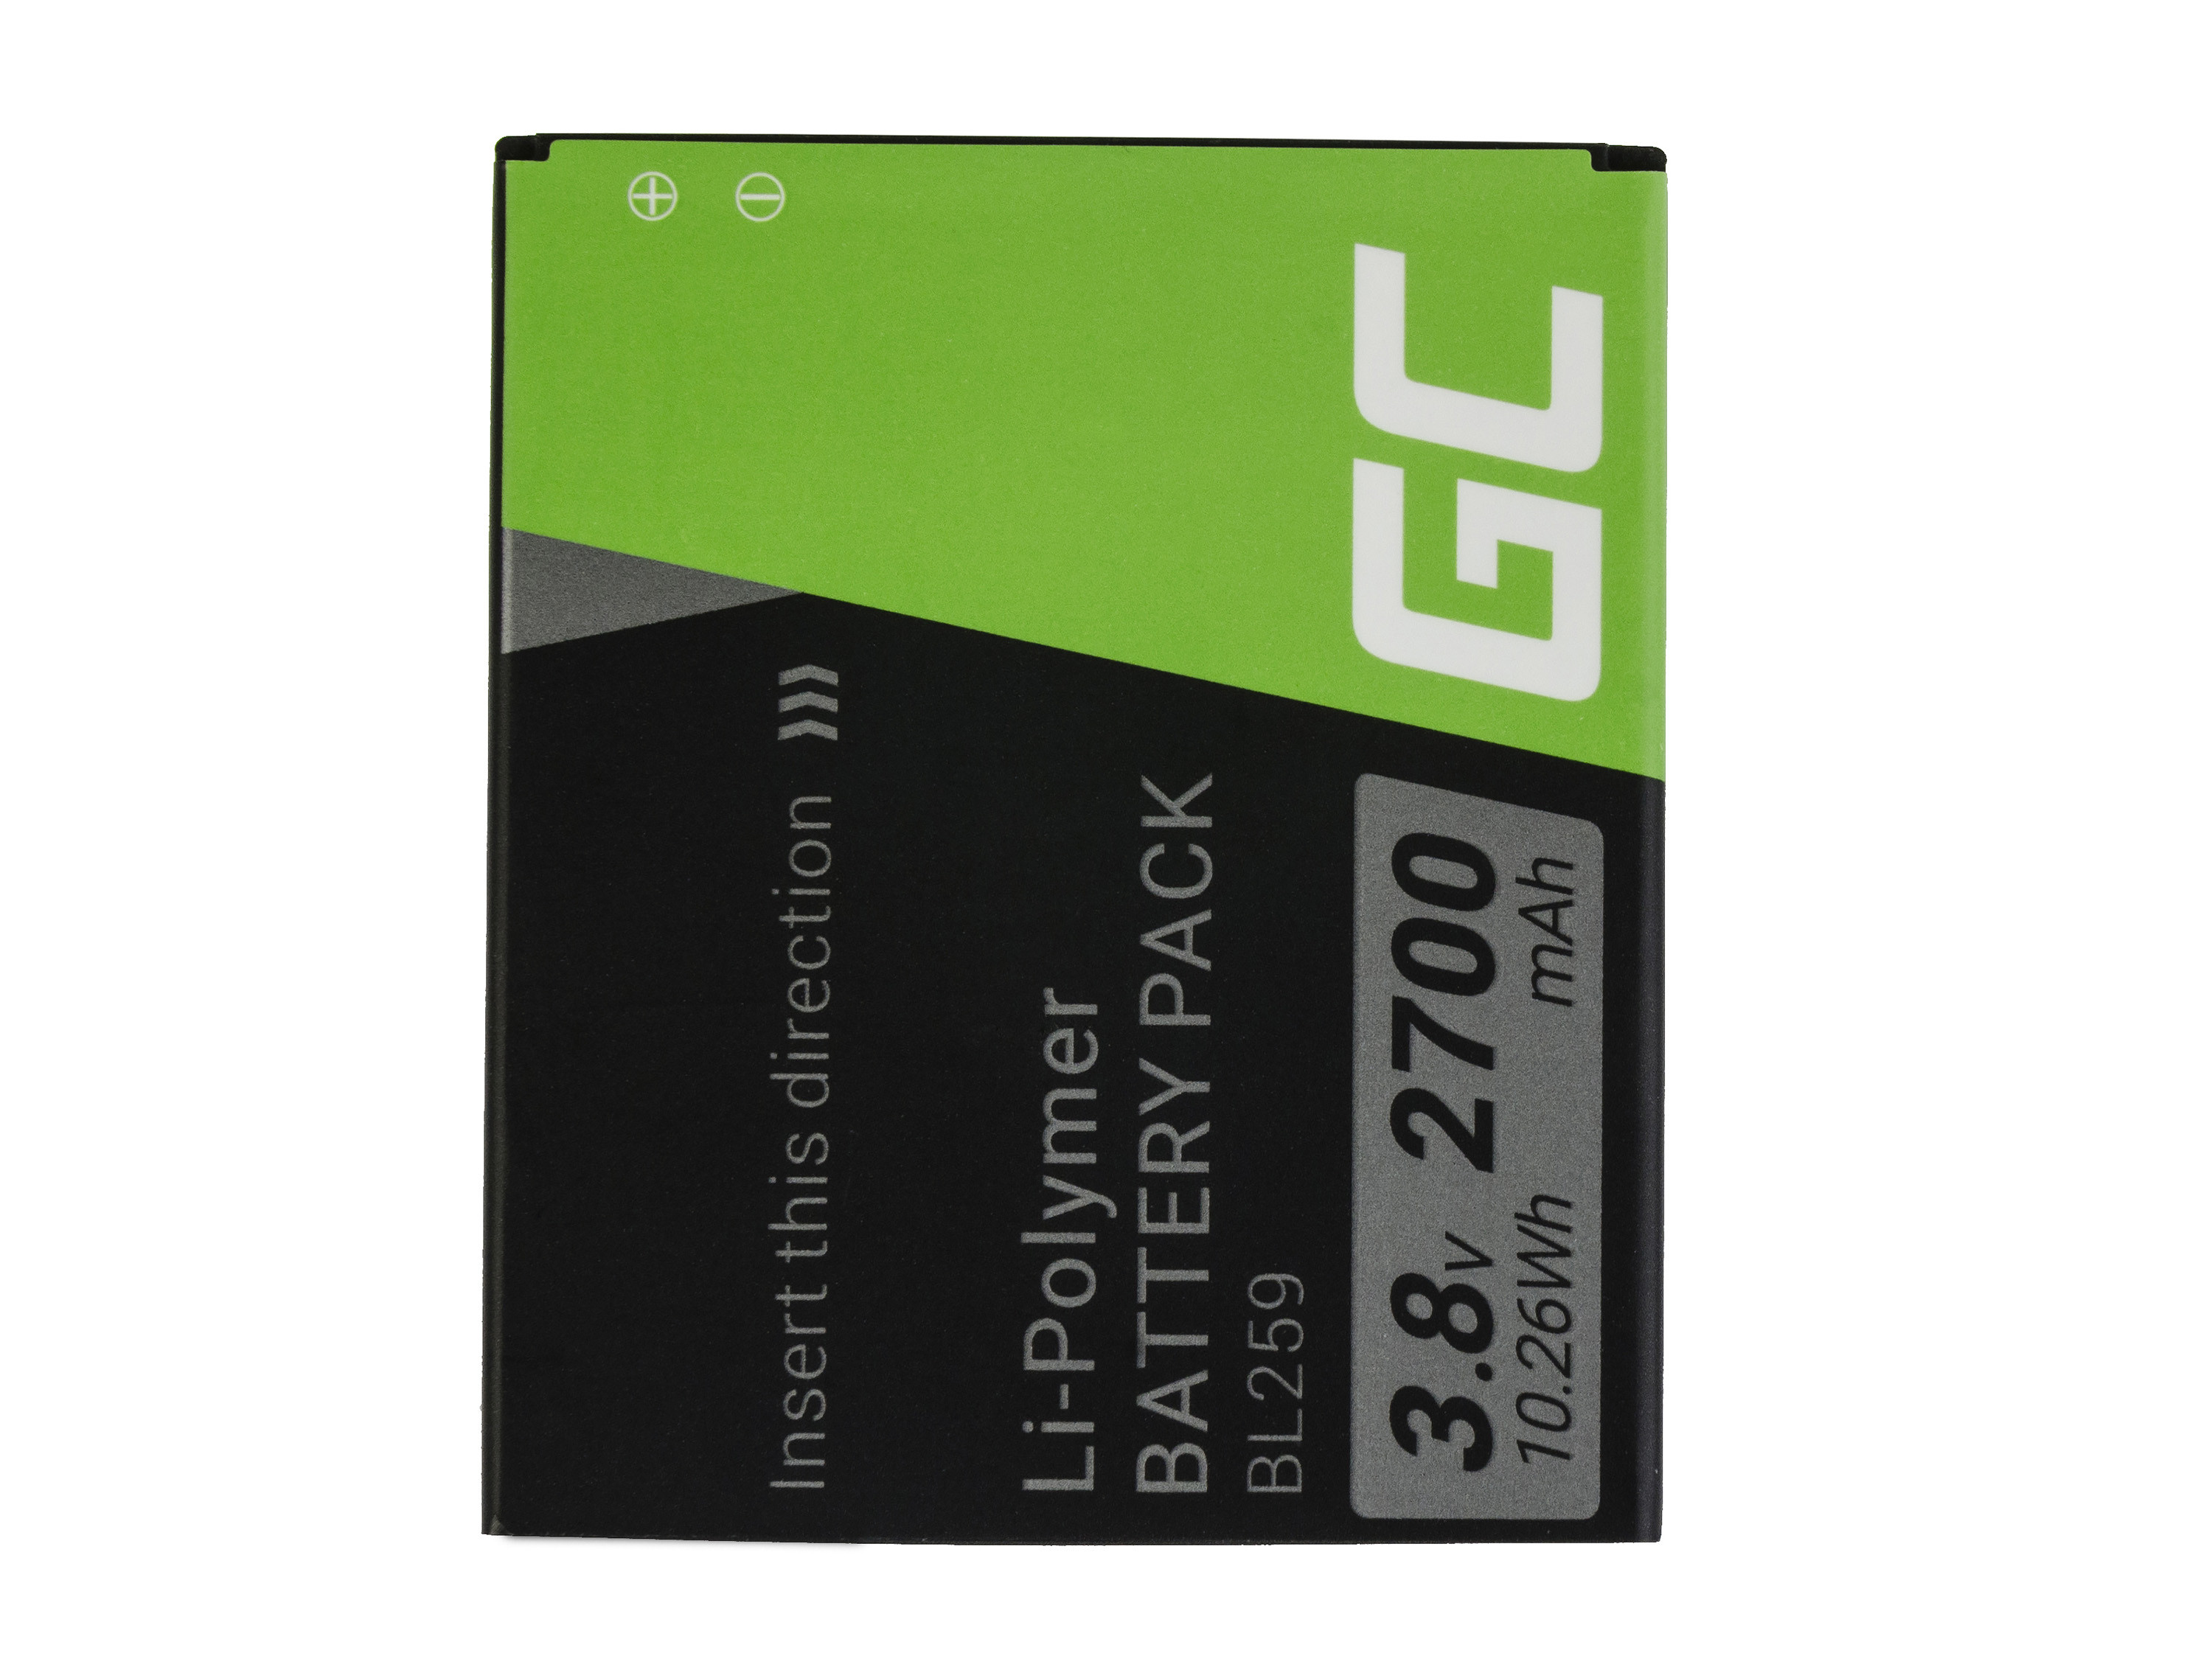 Green Cell BP69 Baterie Lenovo BL259 Lenovo K3 K5 K5 Plus C2 Lemon 3 3.8V 2700mAh Li-ion